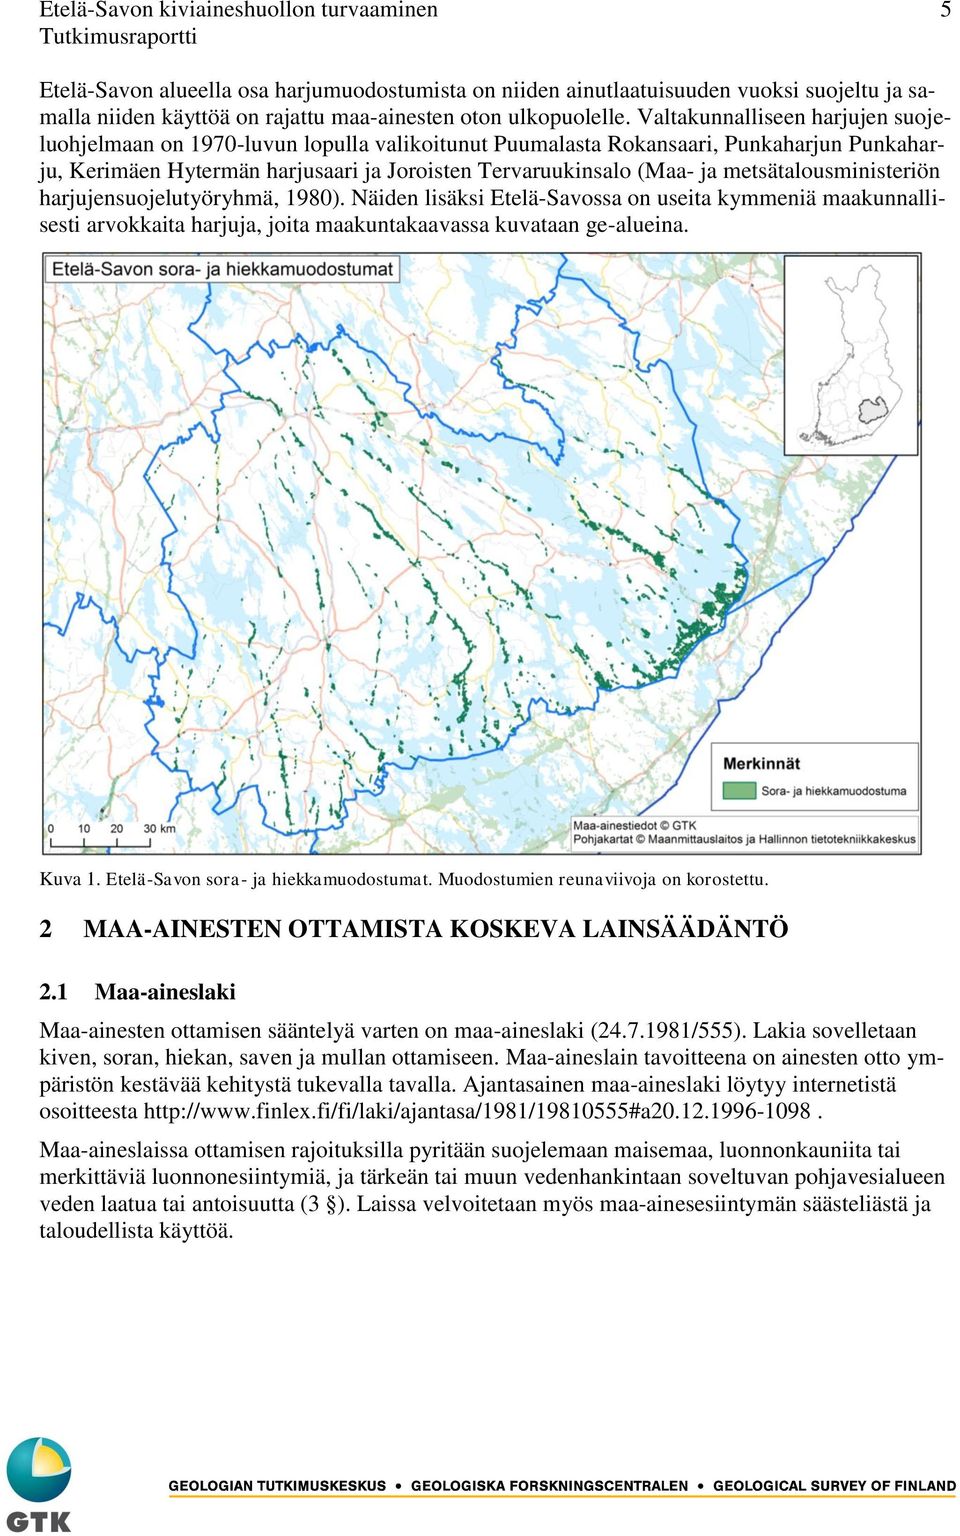 metsätalousministeriön harjujensuojelutyöryhmä, 1980). Näiden lisäksi Etelä-Savossa on useita kymmeniä maakunnallisesti arvokkaita harjuja, joita maakuntakaavassa kuvataan ge-alueina. Kuva 1.